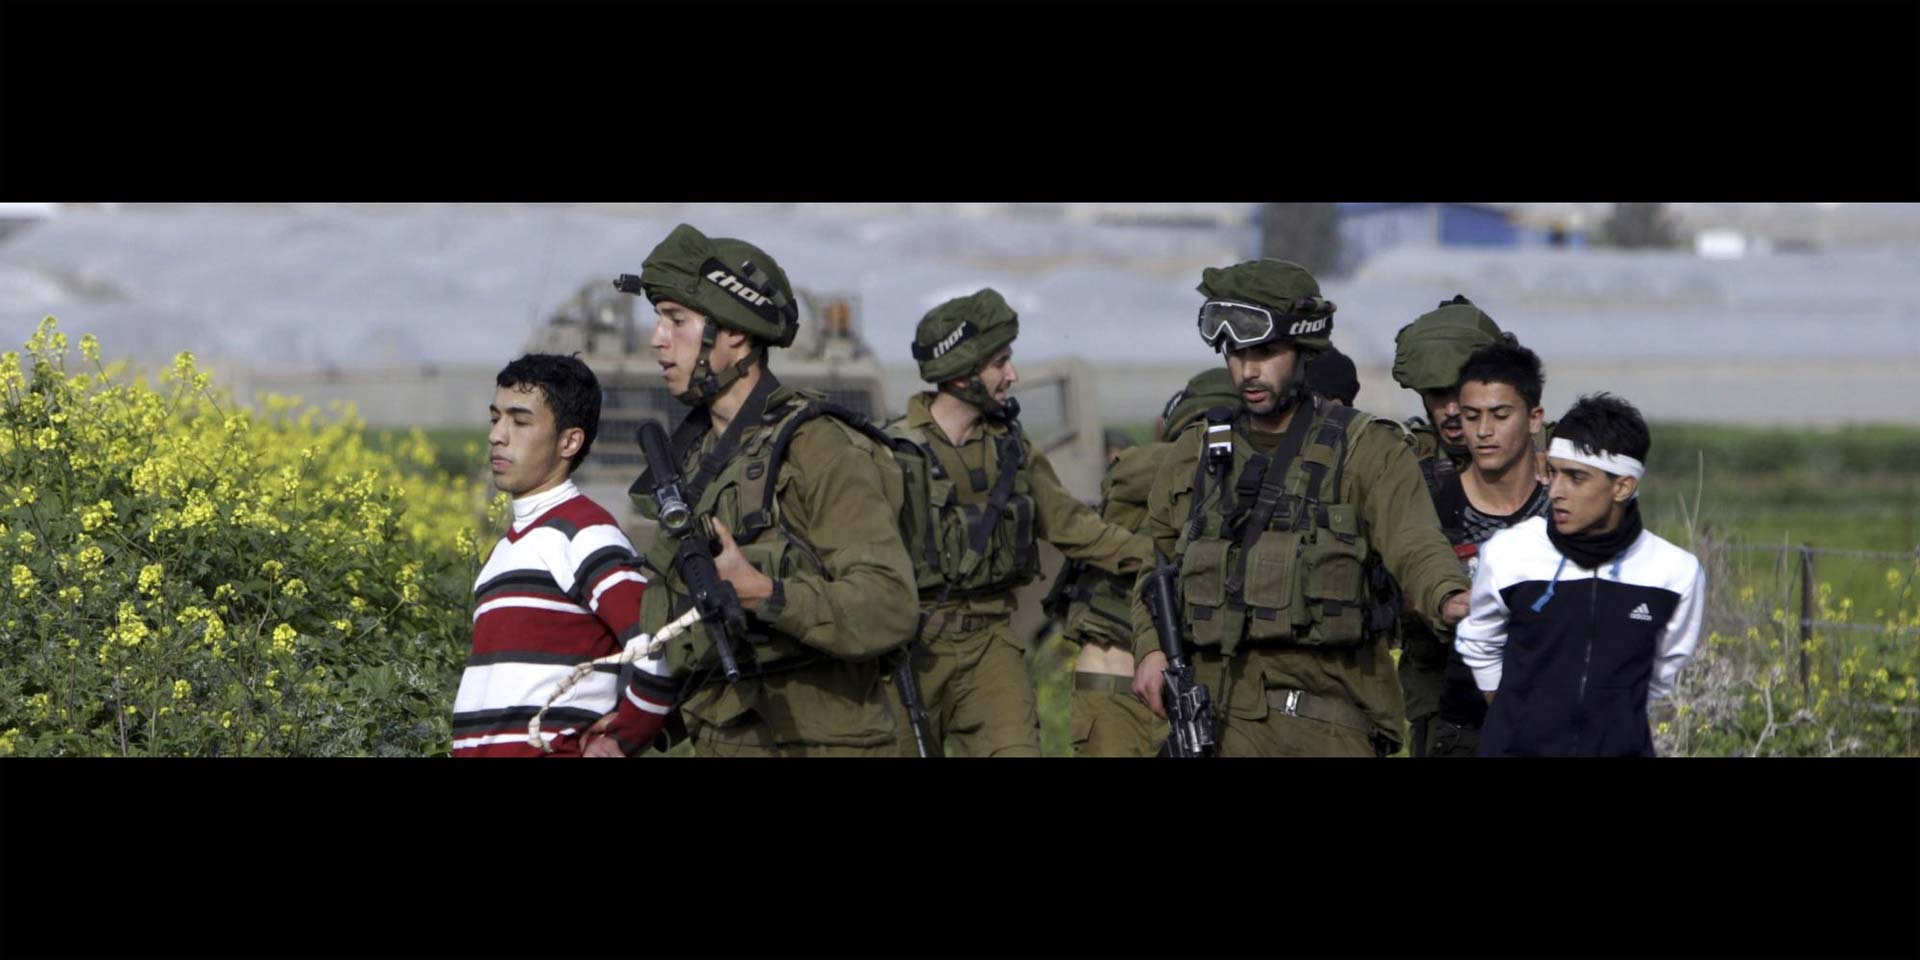 En Israel el número de adolescentes palestinos recluidos sigue aumentando, lo cual ha sido muy criticado